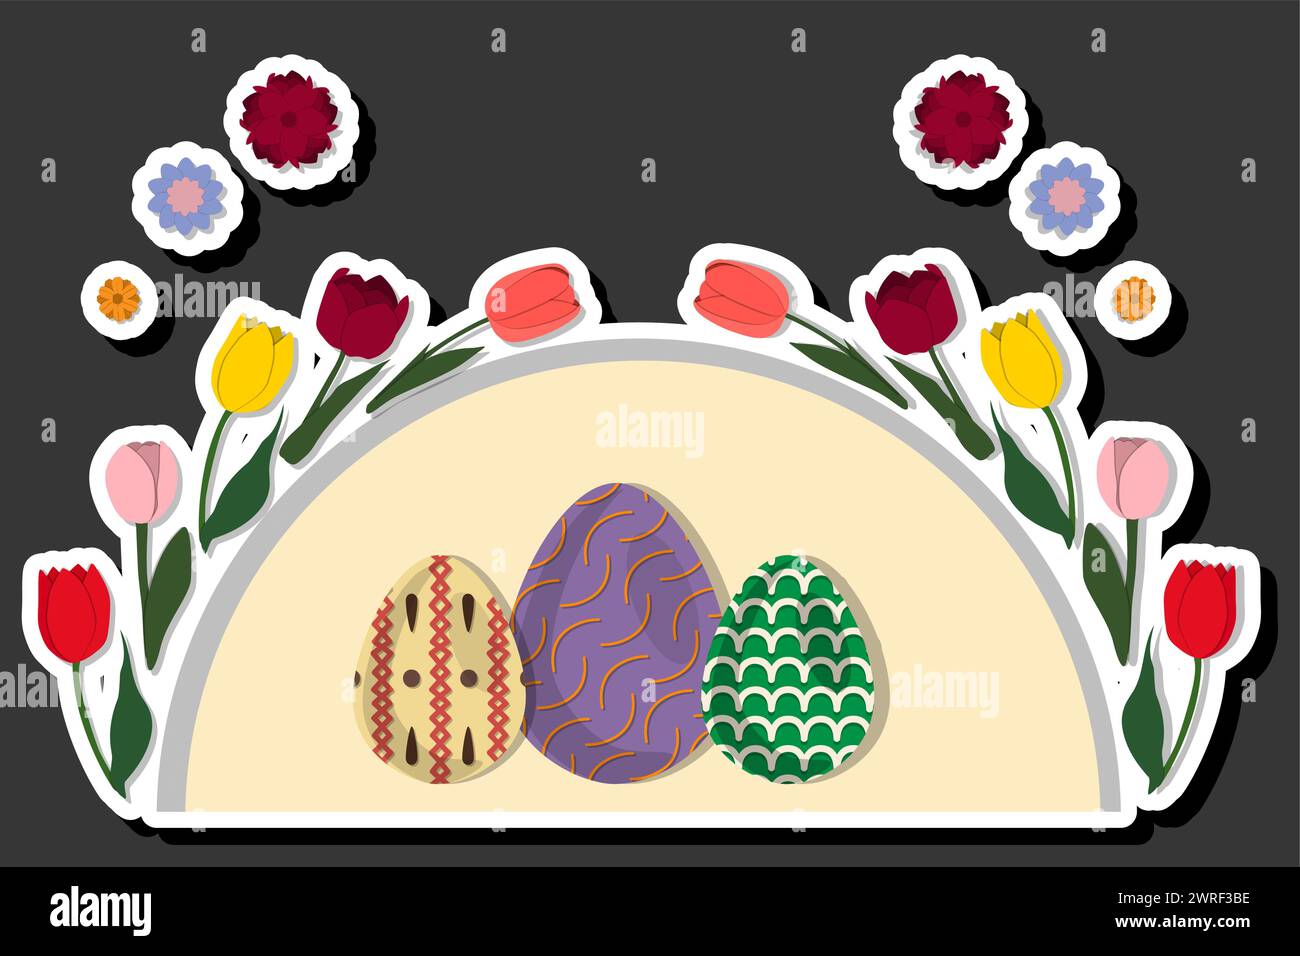 Illustrazione delle festività a tema di Pasqua con la caccia alle uova colorate, striscione composto da diverse uova di Pasqua, caccia alla splendida Easte Illustrazione Vettoriale